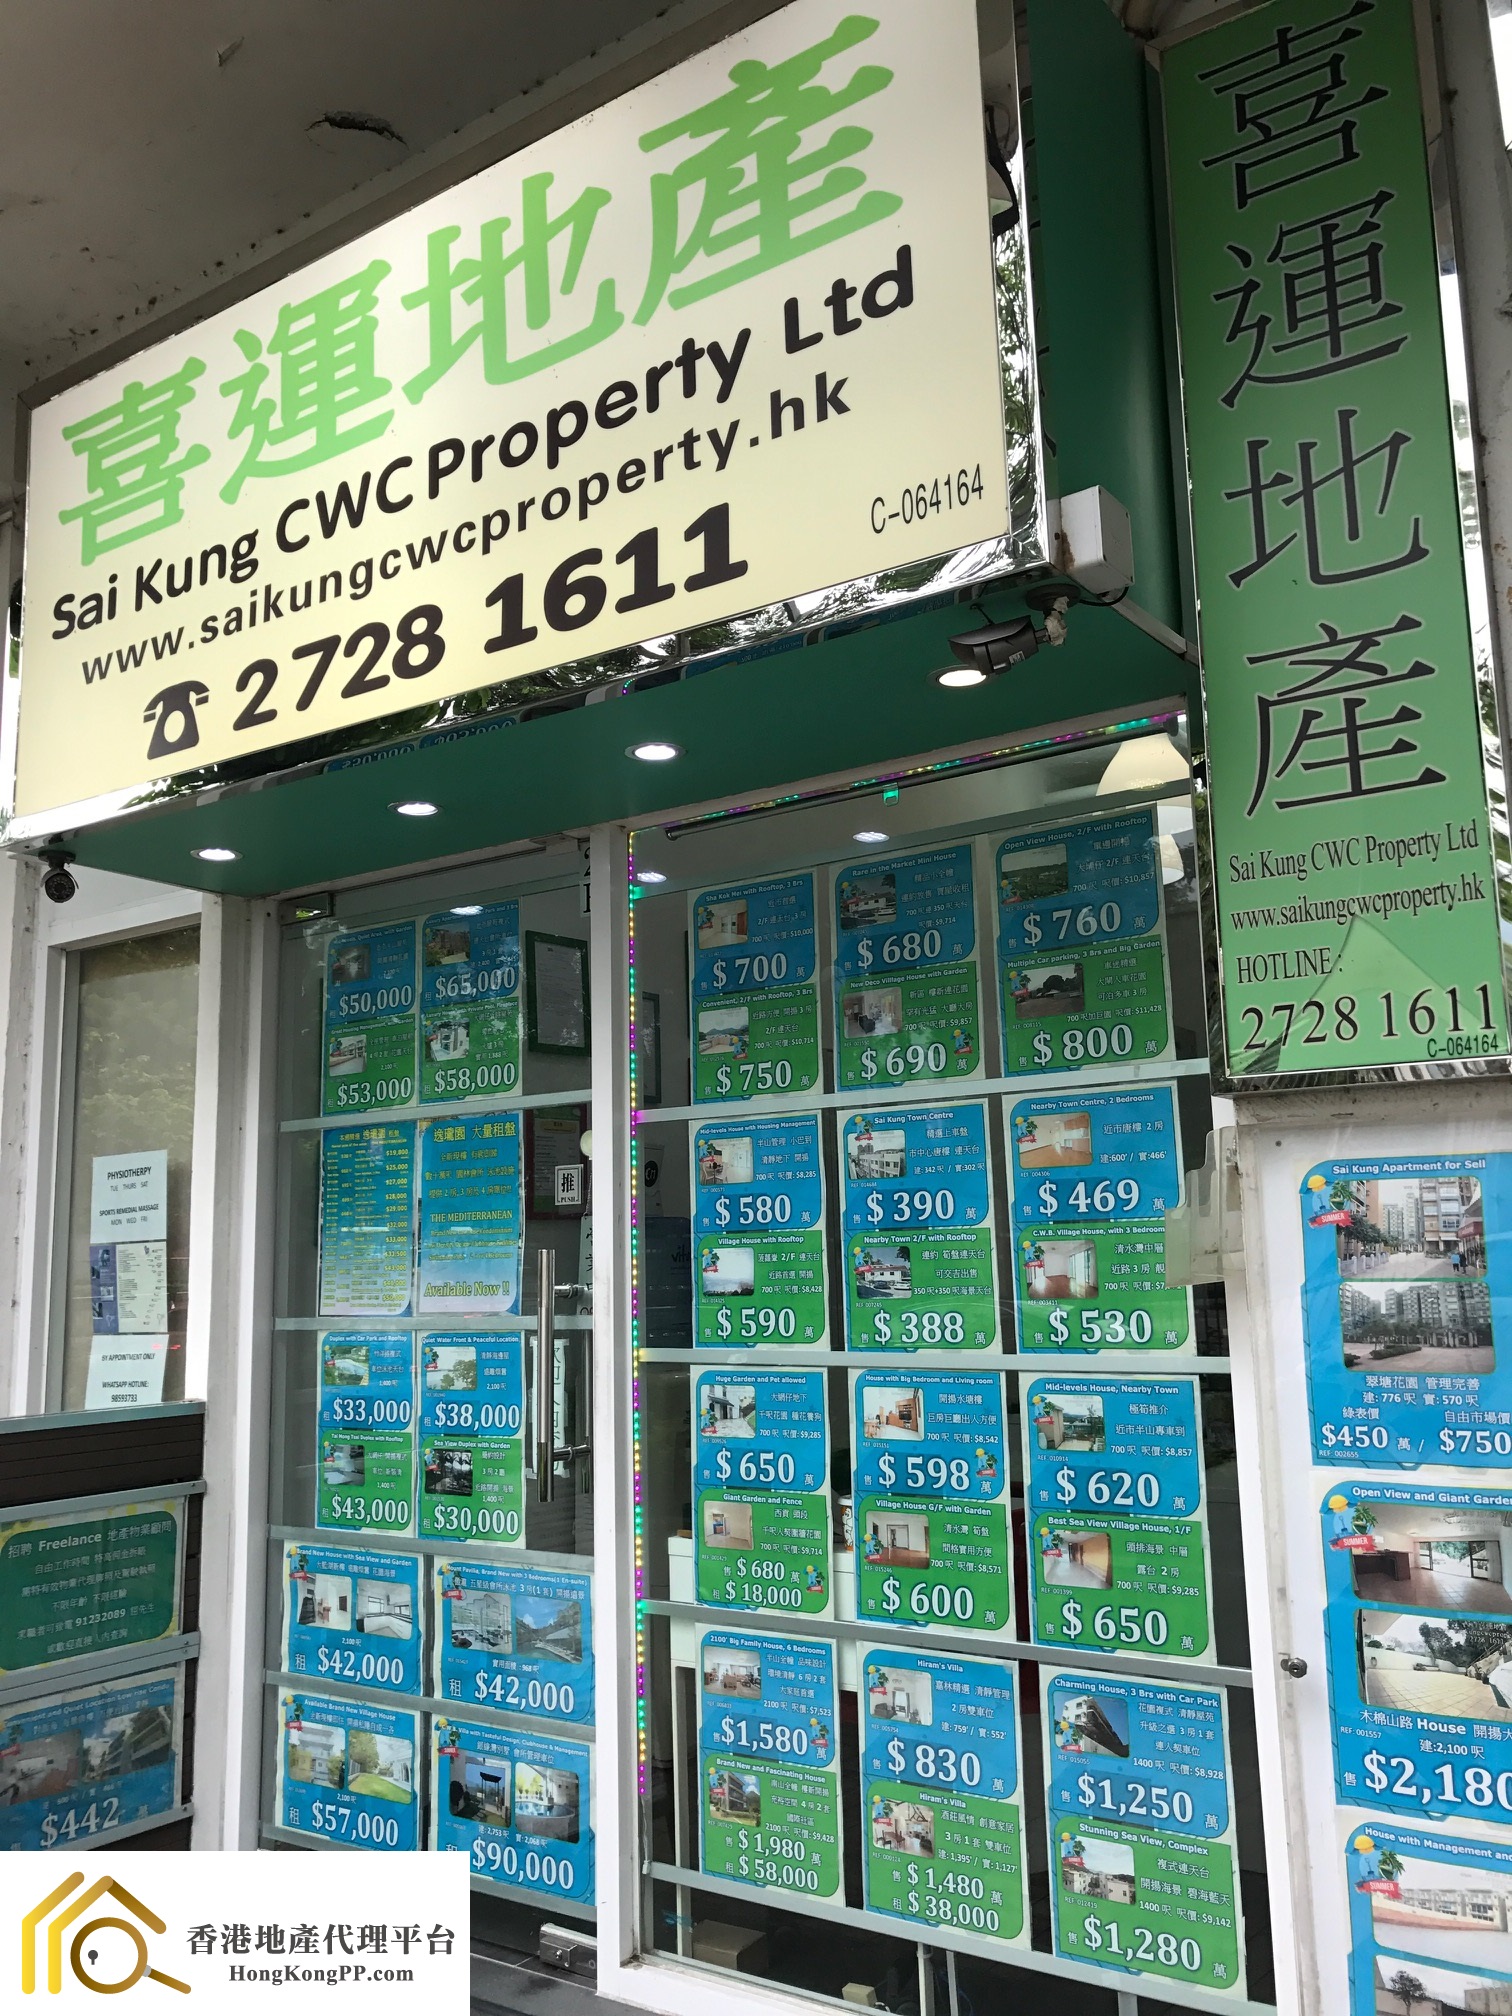 商舖地產代理: 西貢喜運地產  Sai Kung CWC Property